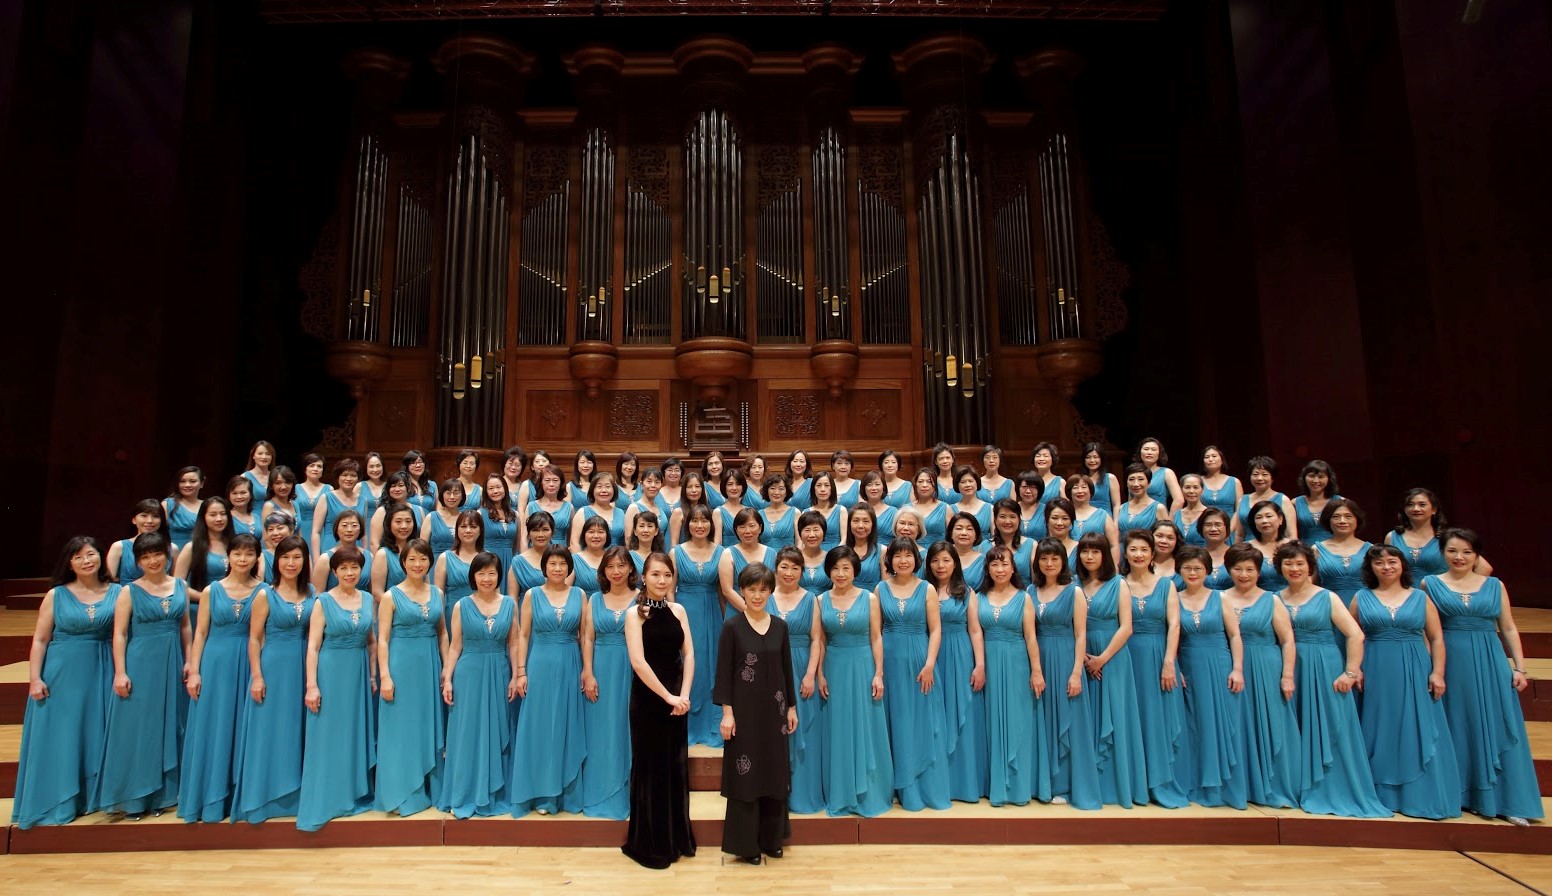 台北愛樂婦女合唱團20週年音樂會 吟唱希望之歌